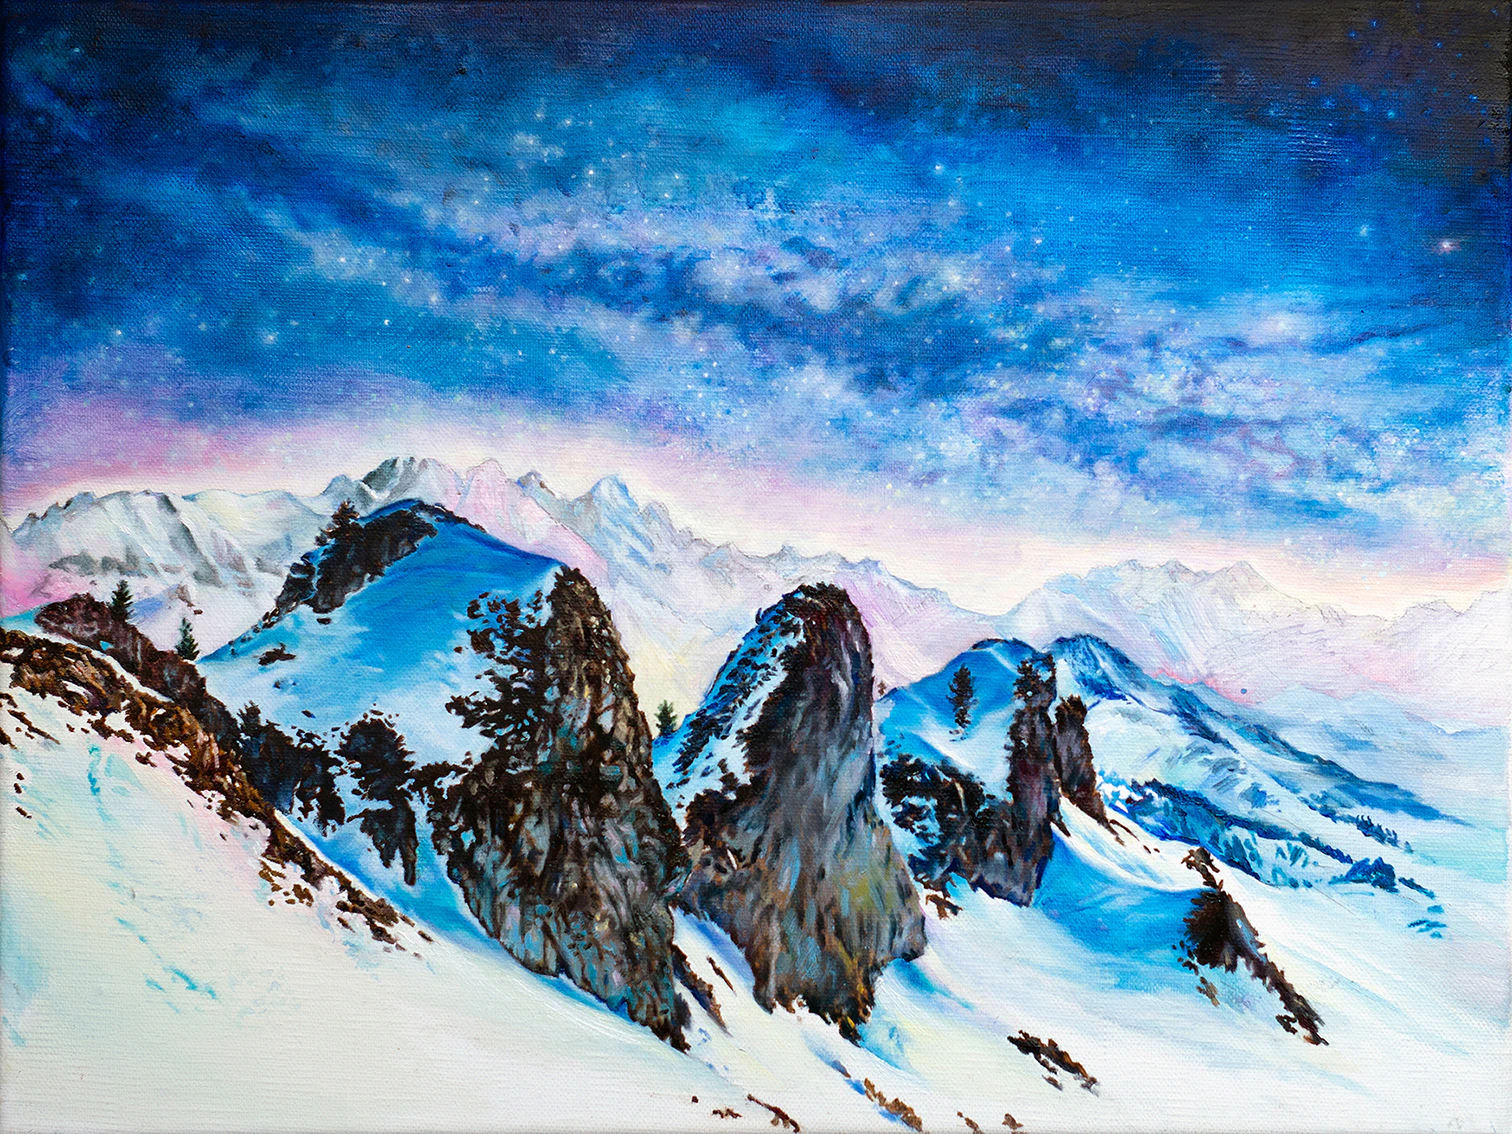 Winter Silence, 2020, Oil on canvas, 30 x 40 cm